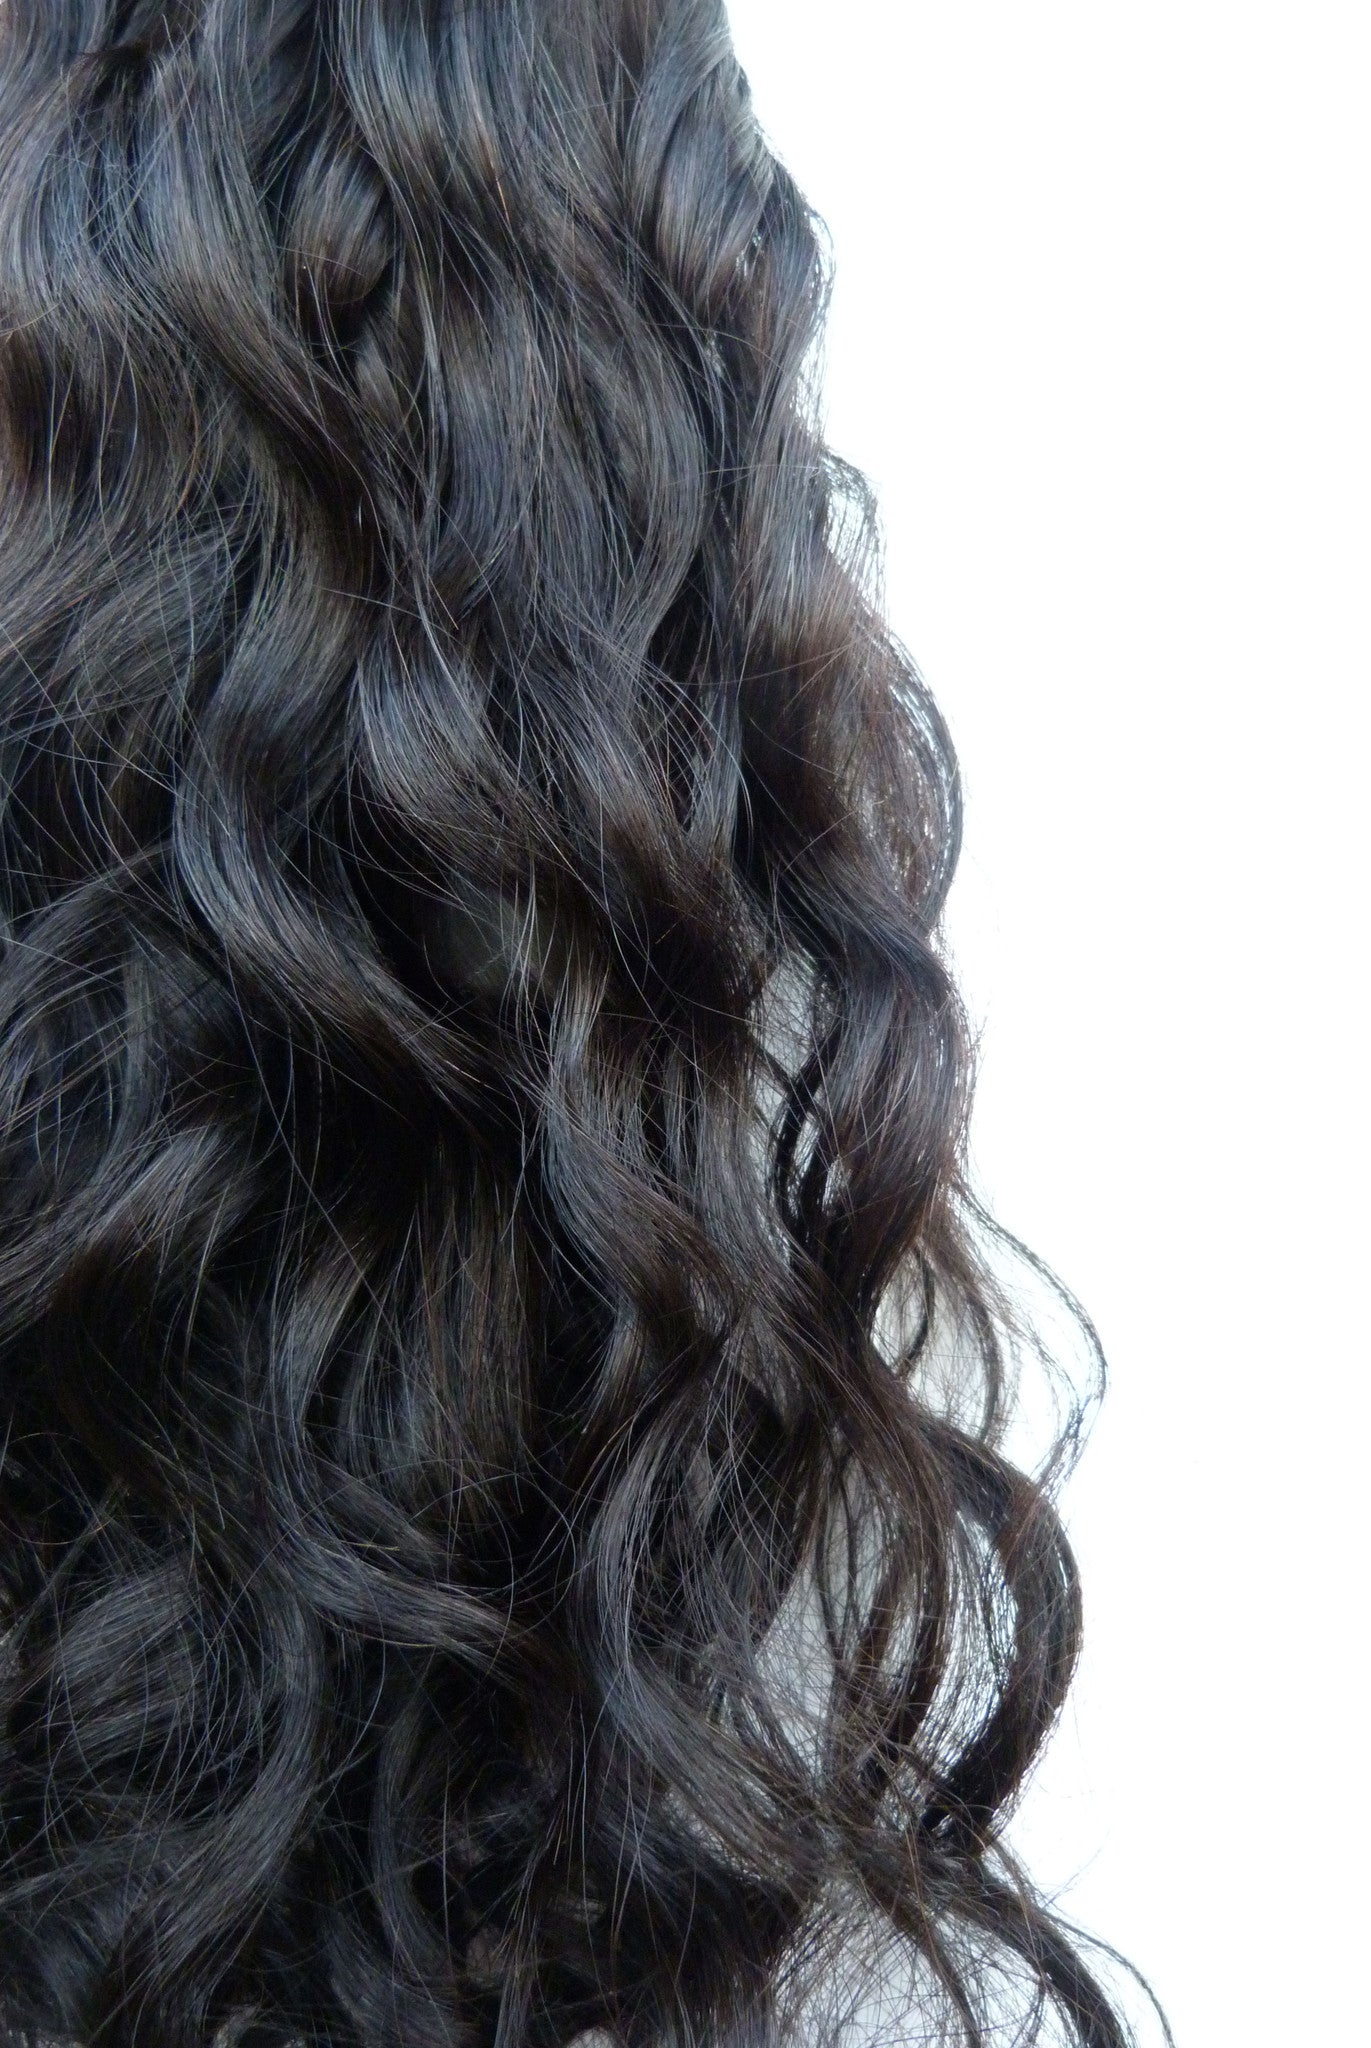 Brazilian virgin human hair extensions - micro loop extensions-virgin hair & beauty, de bästa hårförlängningarna, äkta jungfruligt människohår.